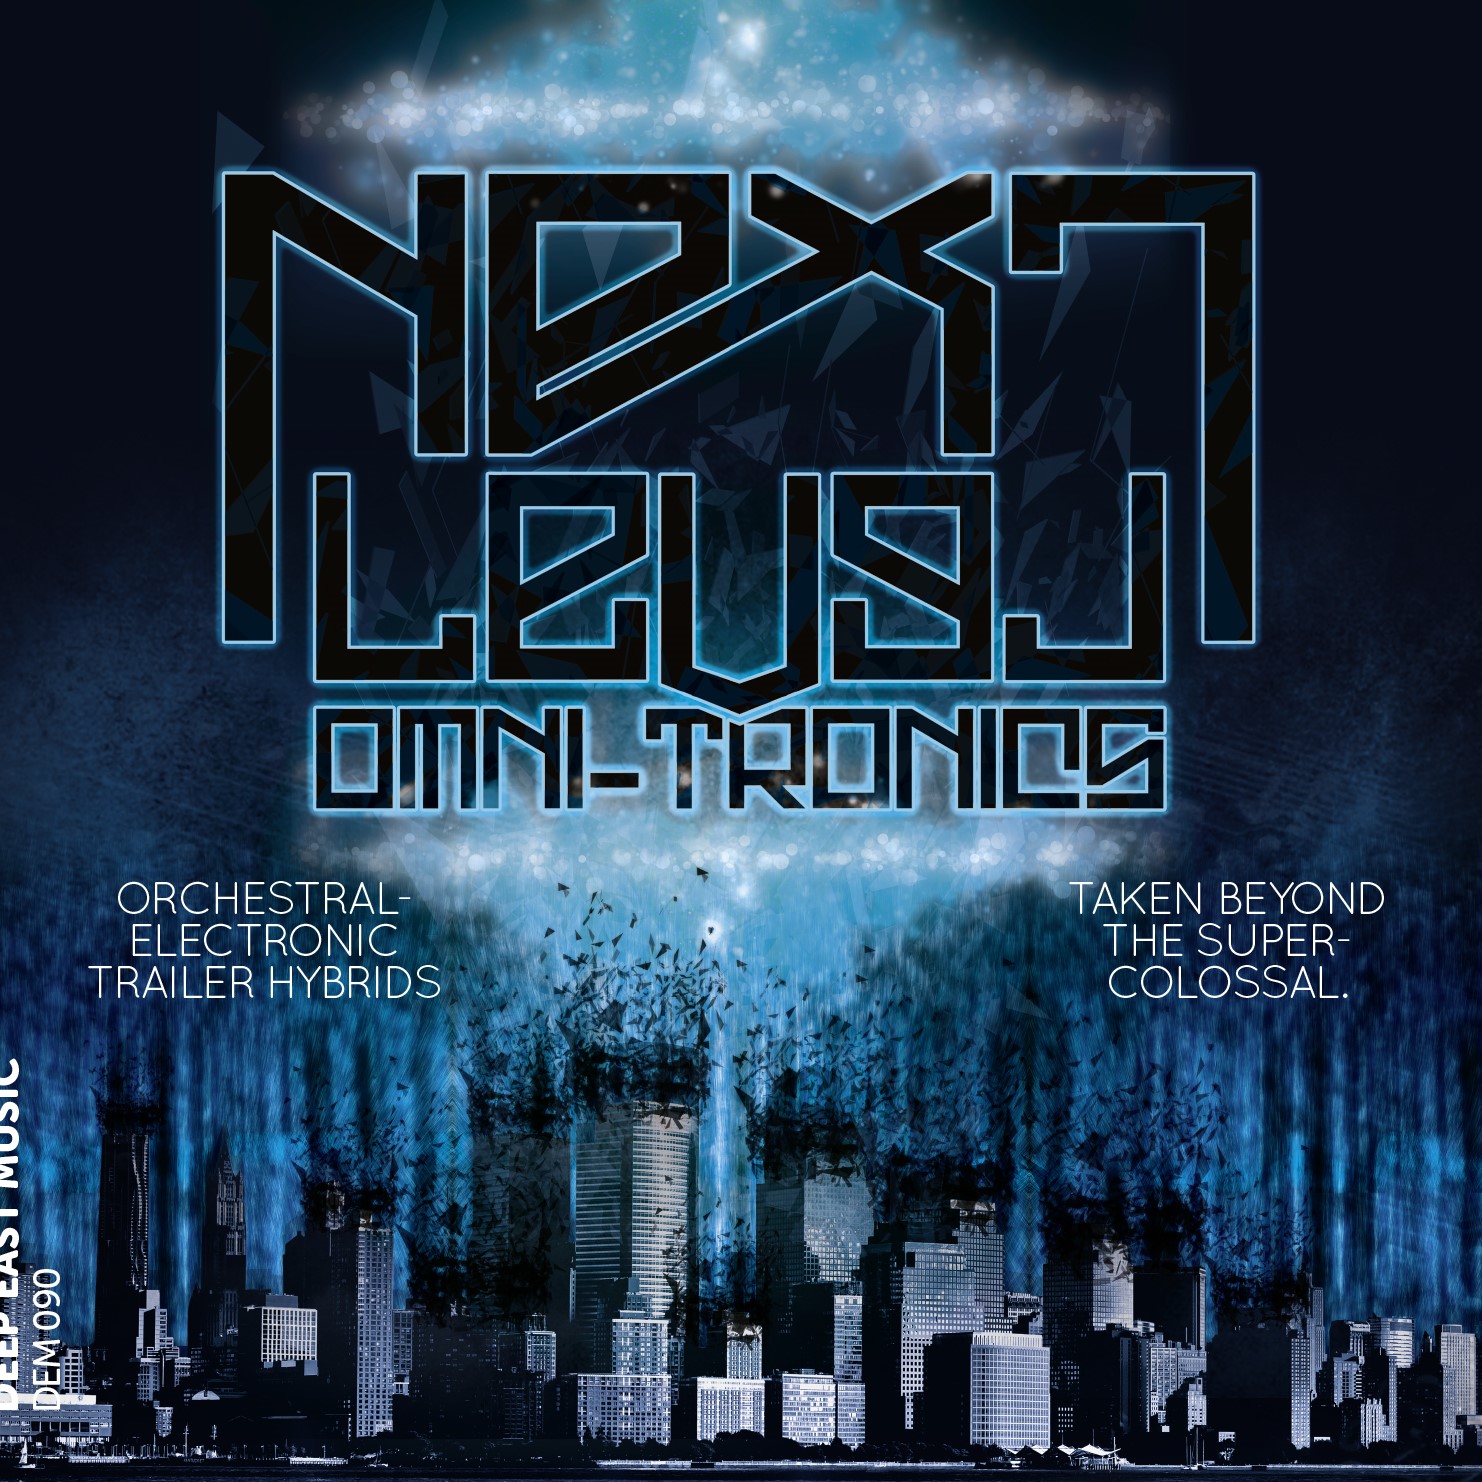 Deep East Music: Next Level – Omni Tronics